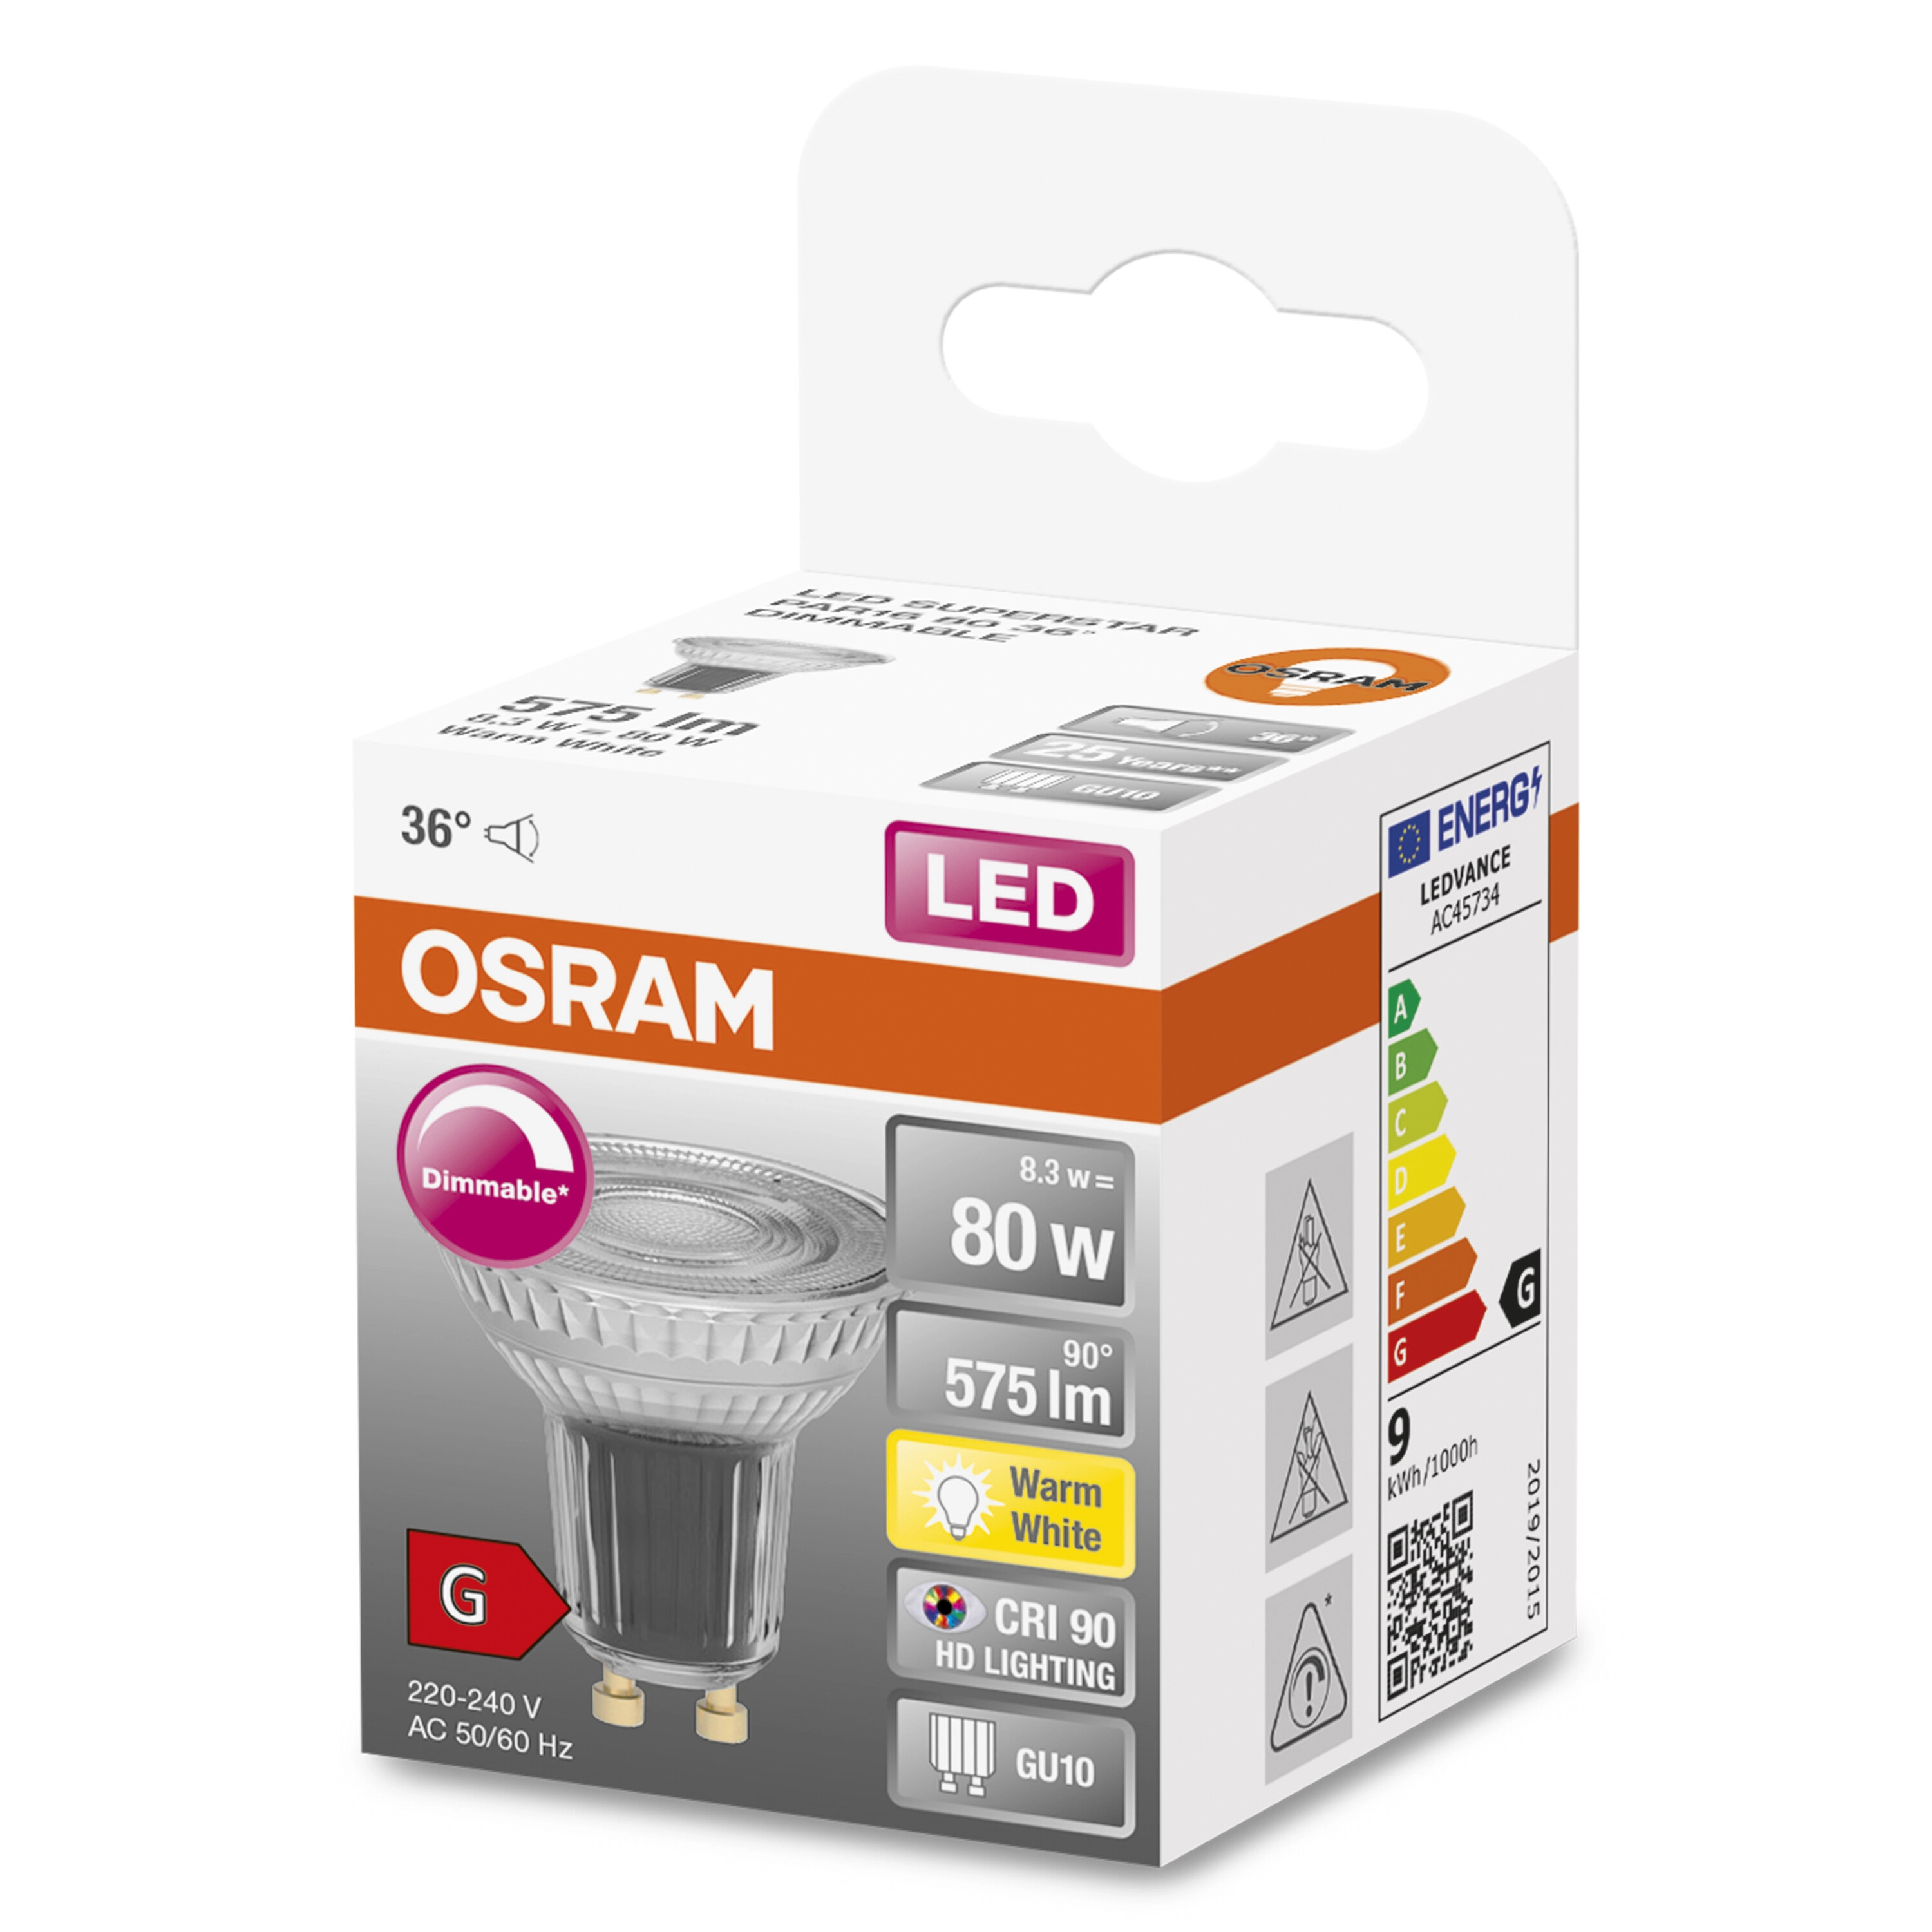 OSRAM Lampadina LED PAR16 36°, 80W 4000K GU10